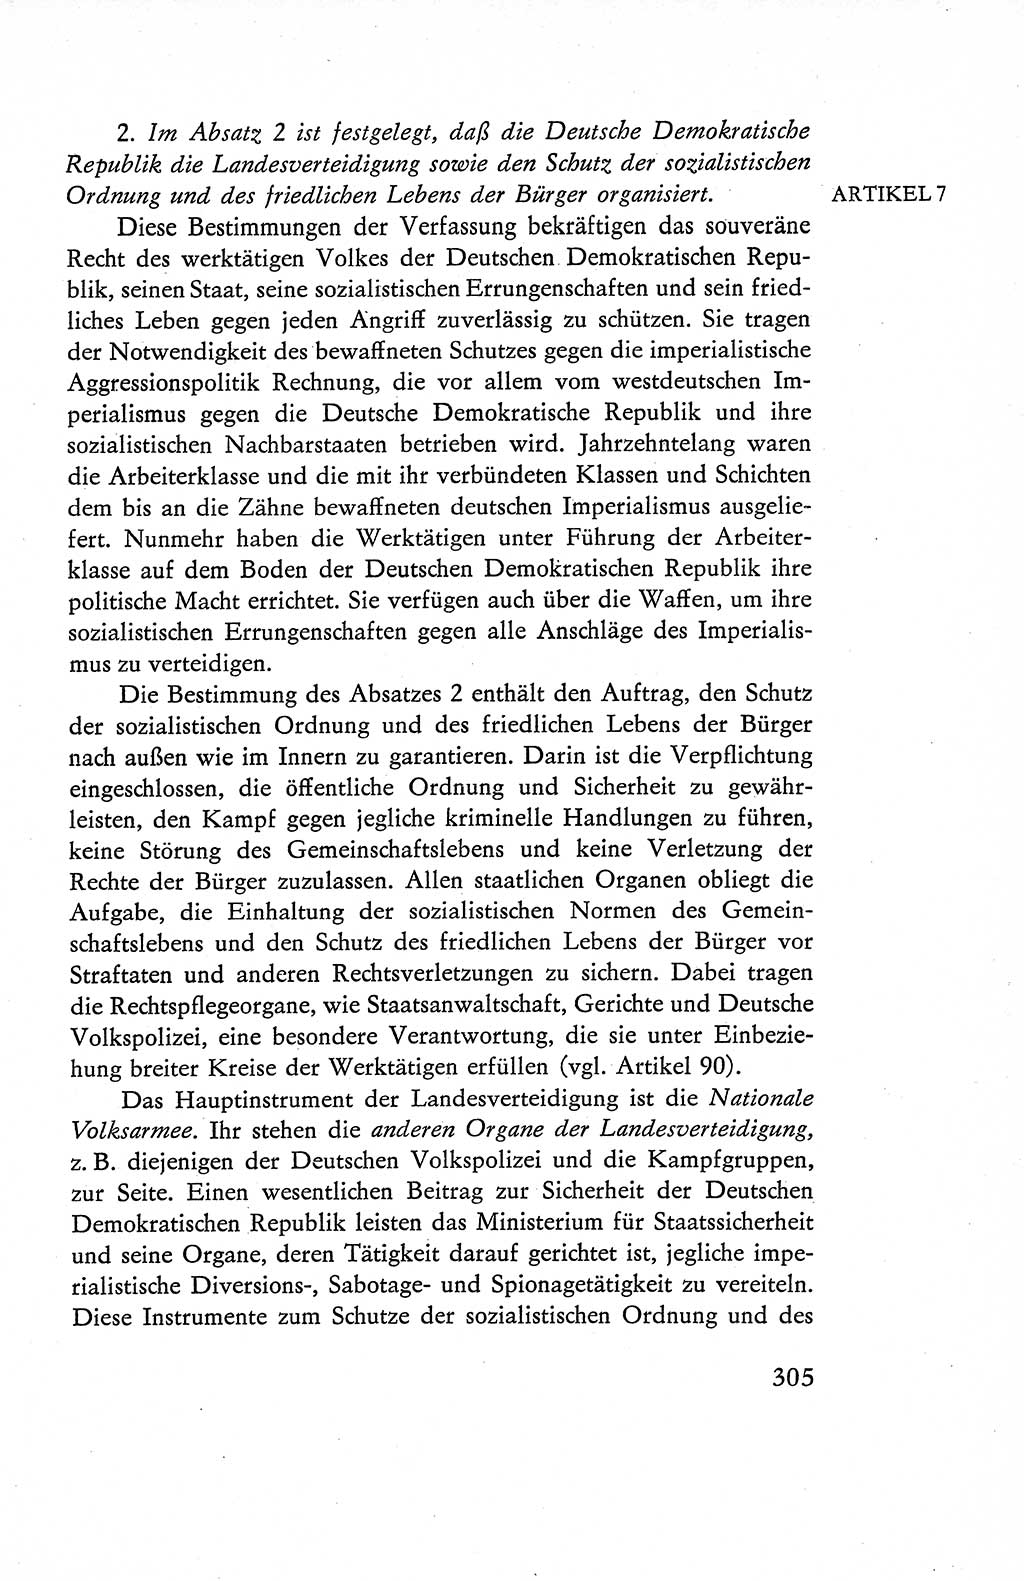 Verfassung der Deutschen Demokratischen Republik (DDR), Dokumente, Kommentar 1969, Band 1, Seite 305 (Verf. DDR Dok. Komm. 1969, Bd. 1, S. 305)